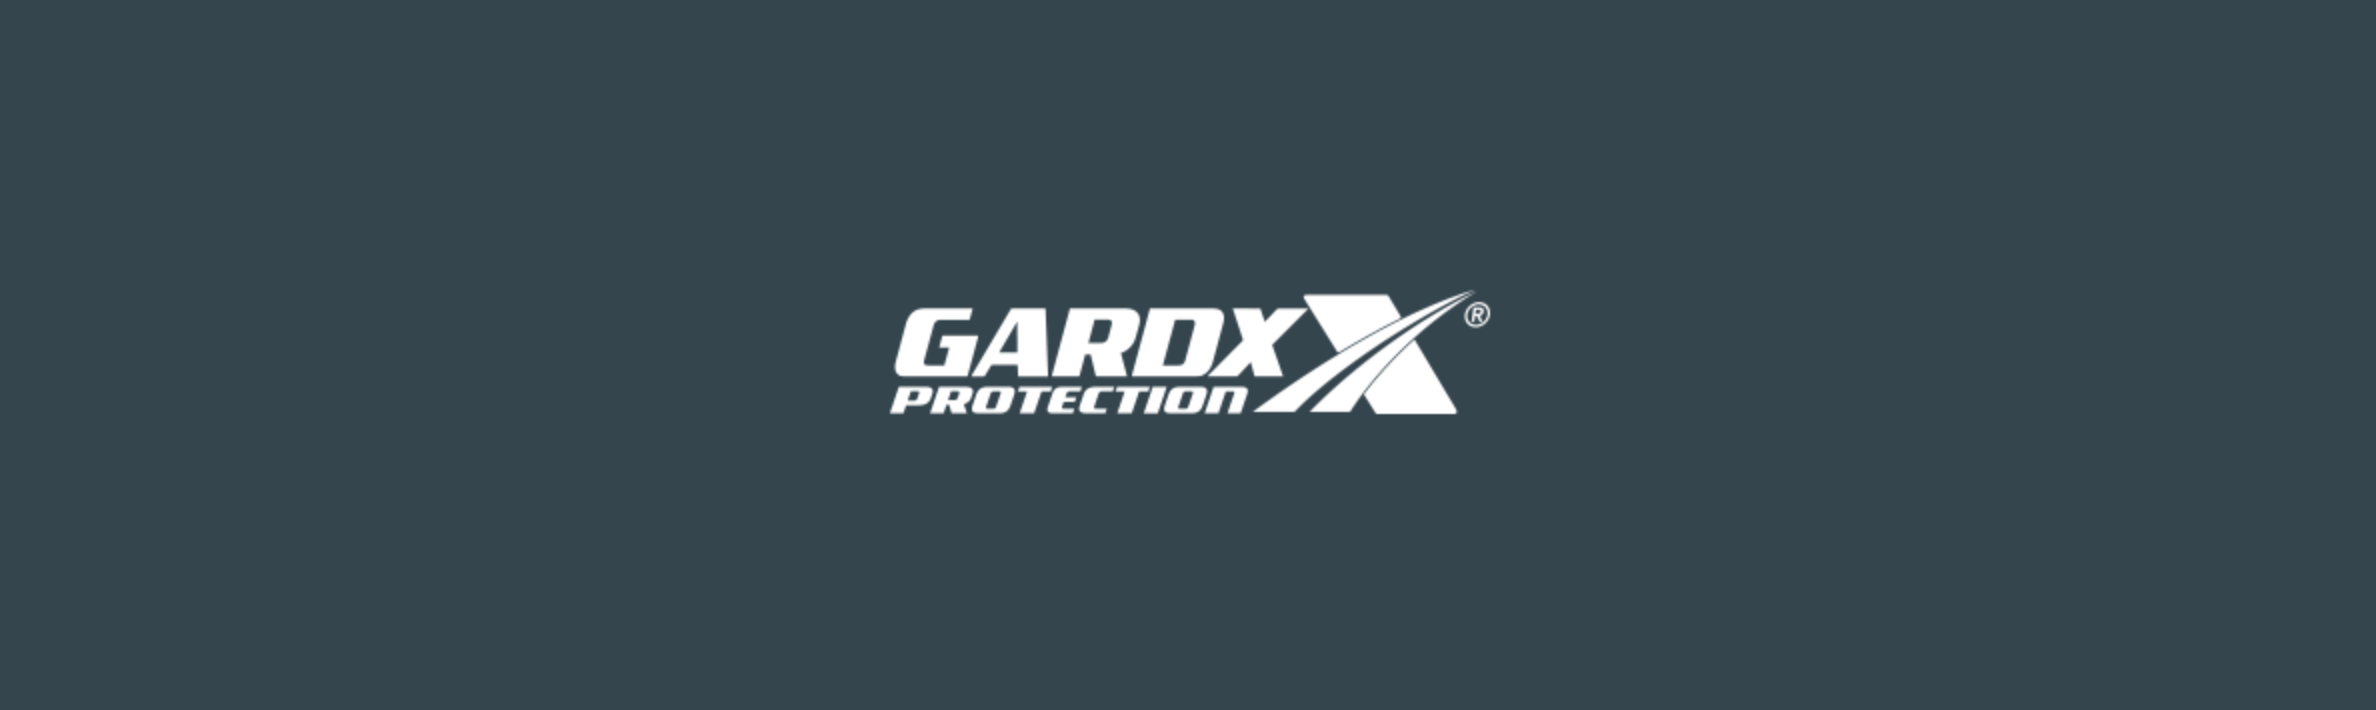 GardX - Wallpaper 